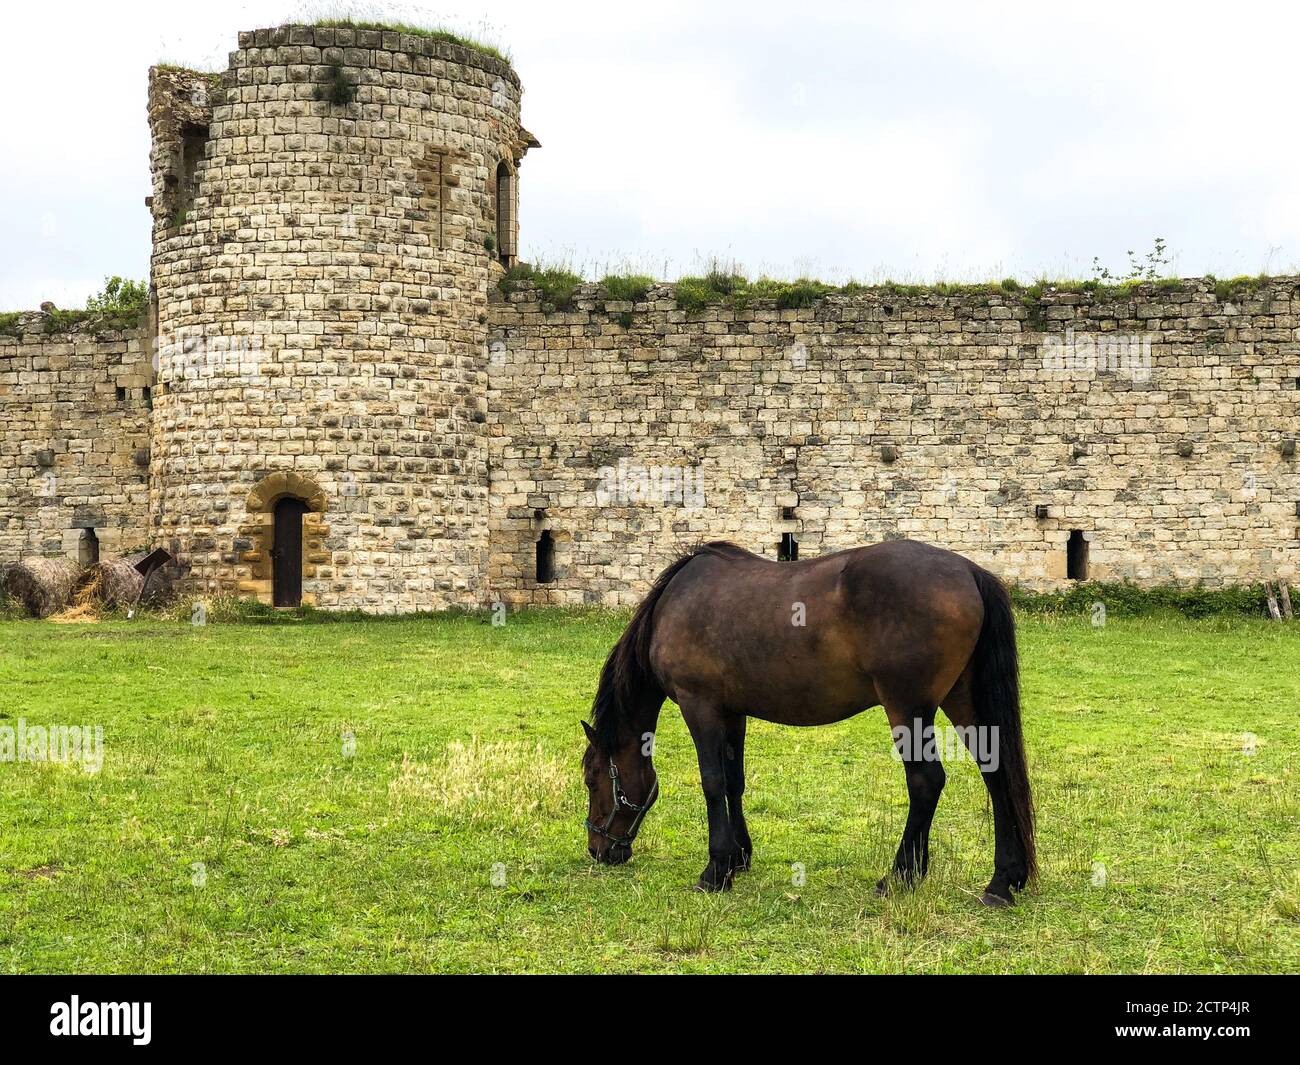 Ein Pferd grast auf dem Hof des Chateau de Puivert, den Ruinen eines Katharerschlosses aus dem 12. Jahrhundert in Puivert, im Département Aude von Frankreich. Stockfoto